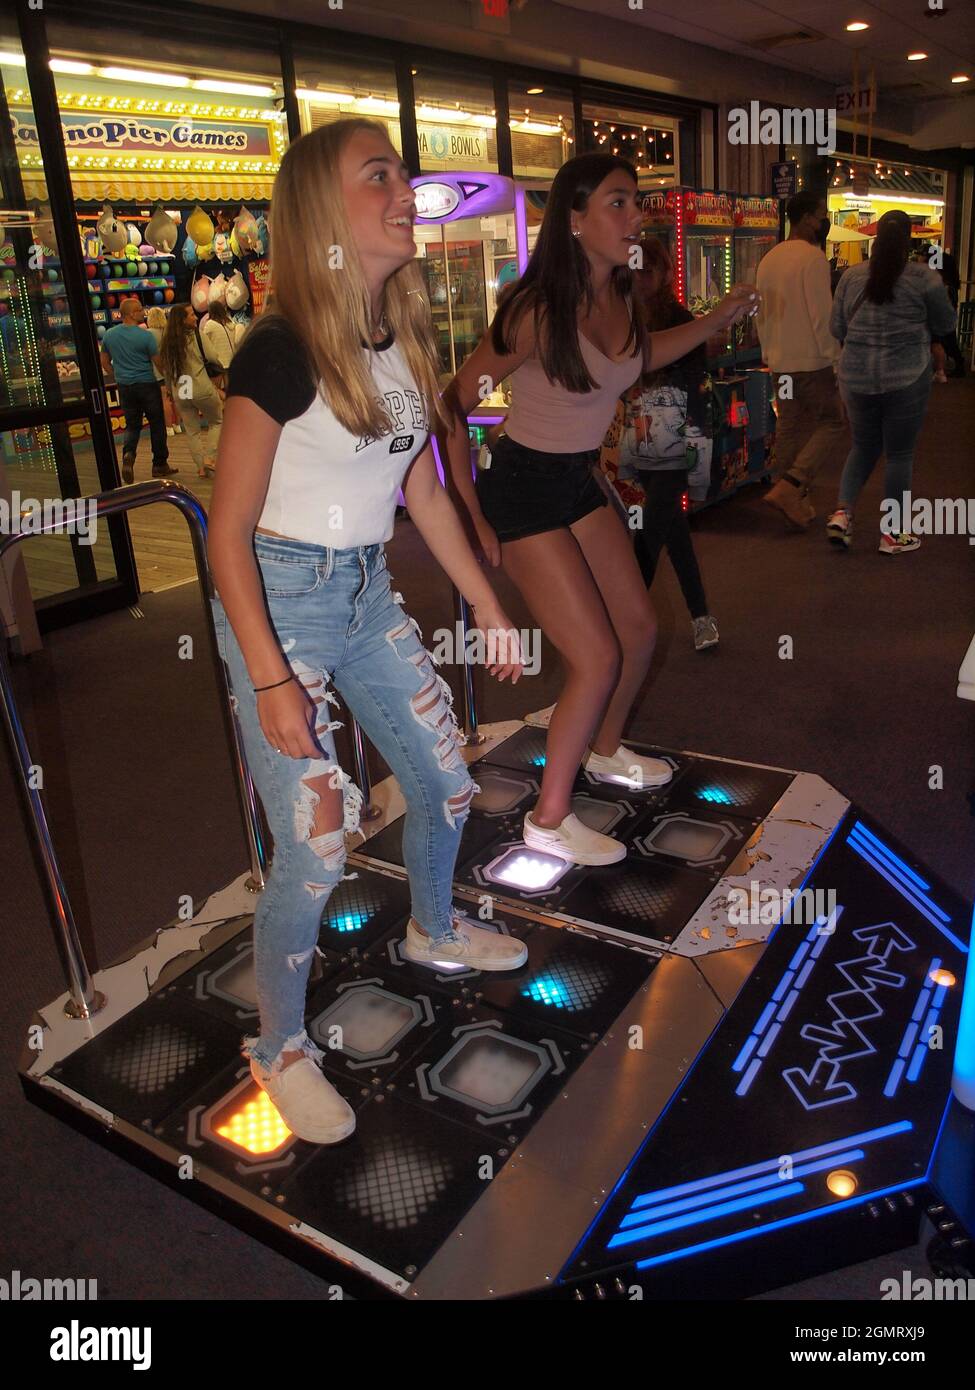 Deux jeunes adolescentes s'amusent dans une arcade sur la promenade de Seaside Heights, dans le New Jersey, pendant une nuit d'été. Banque D'Images